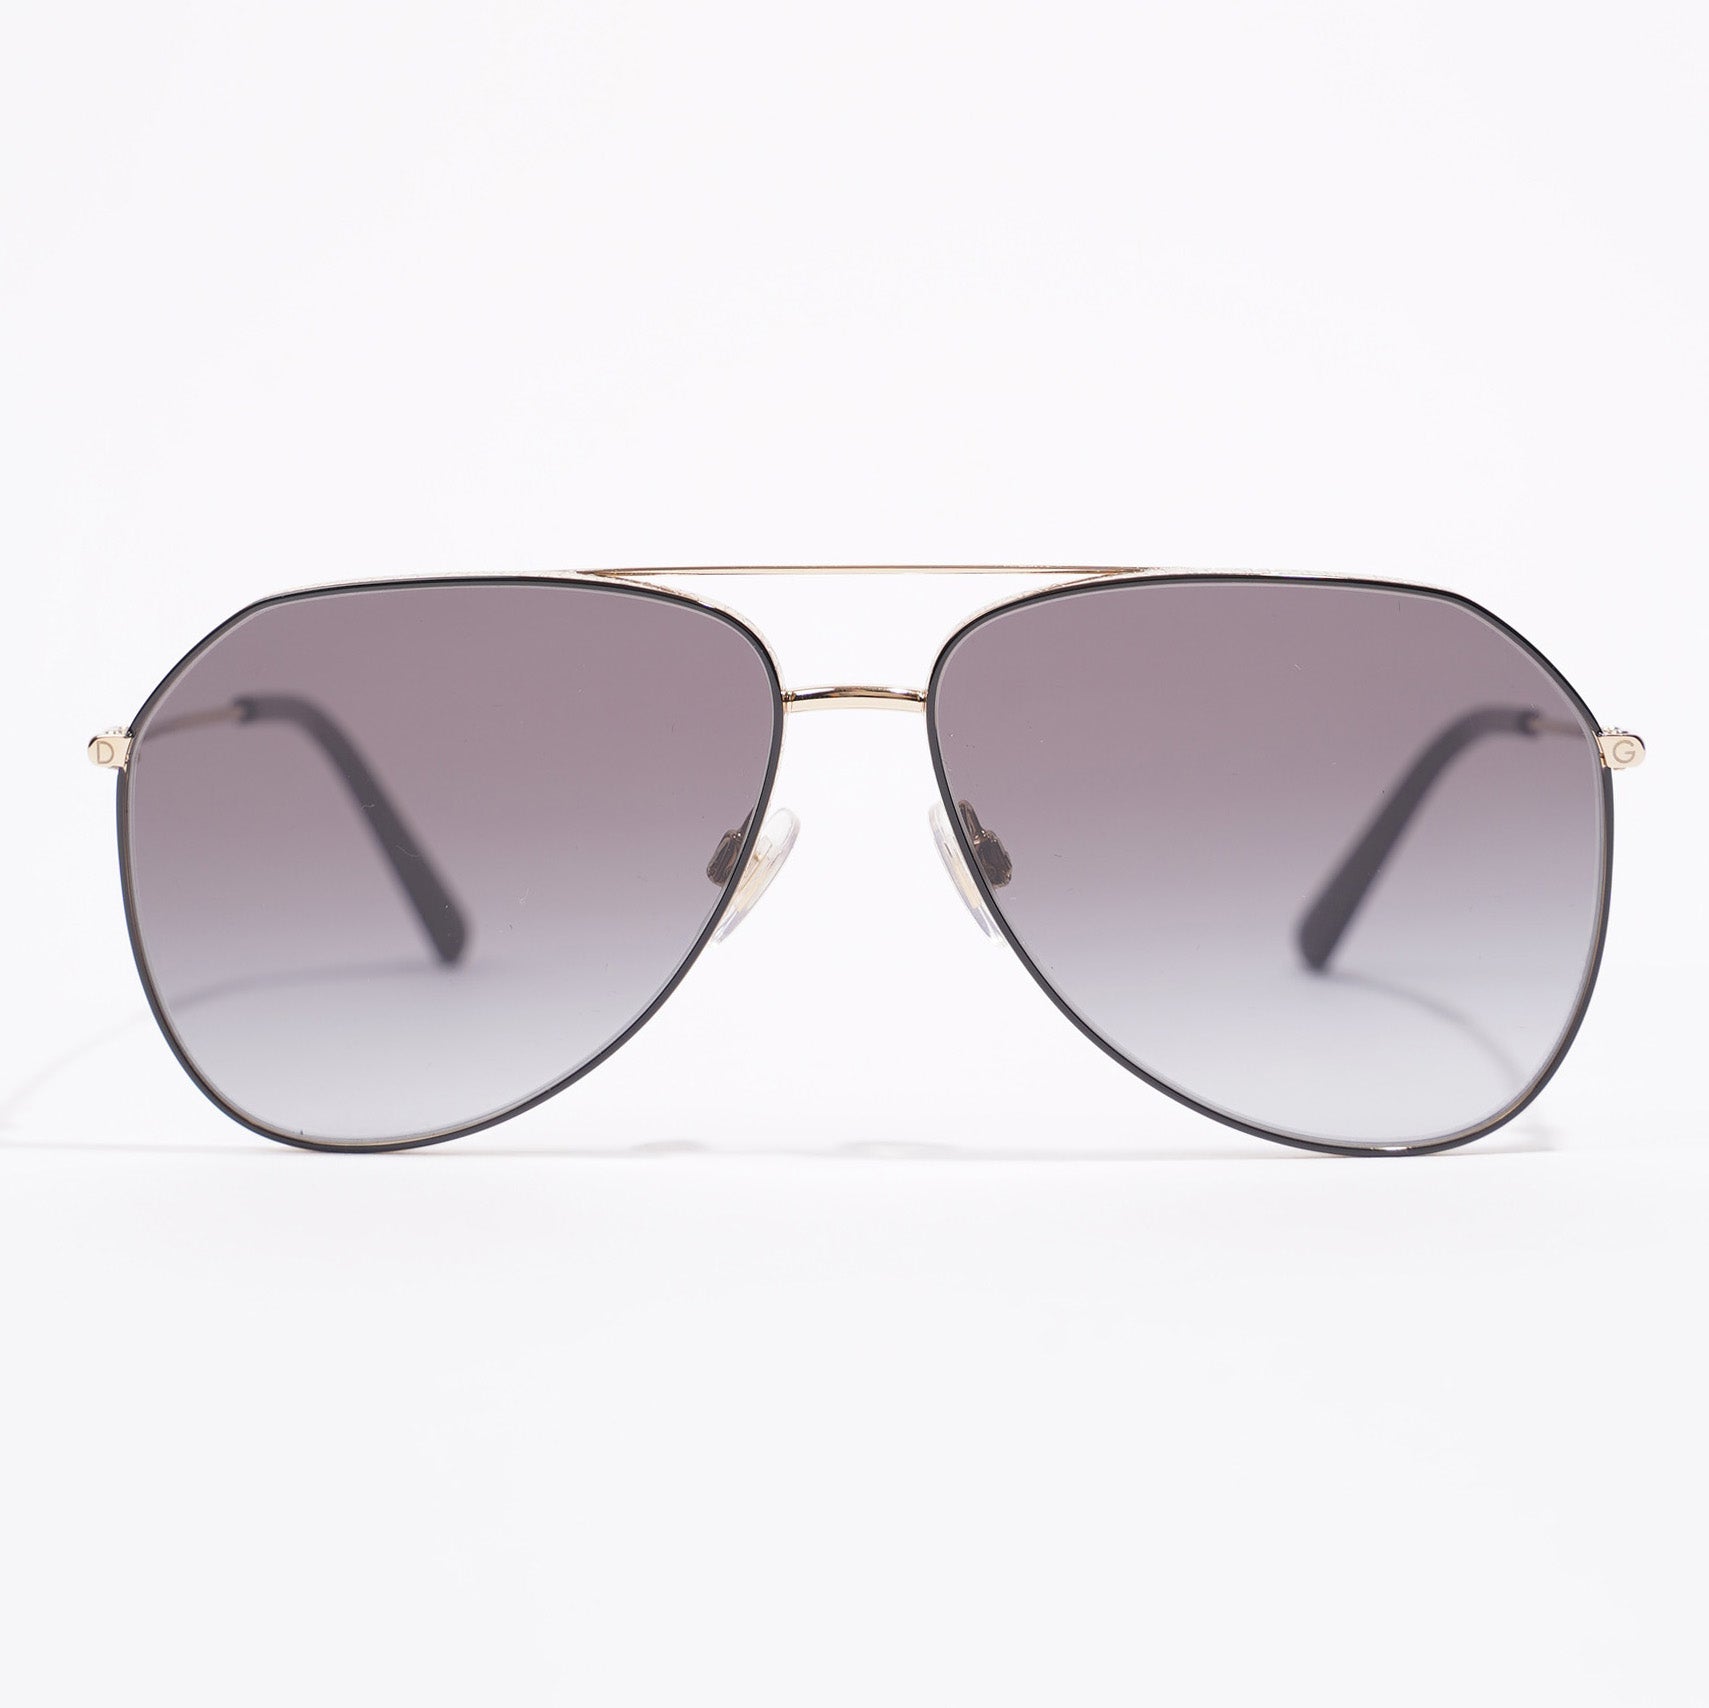 Charleston sunglasses Louis Vuitton Silver in Plastic - 32862318